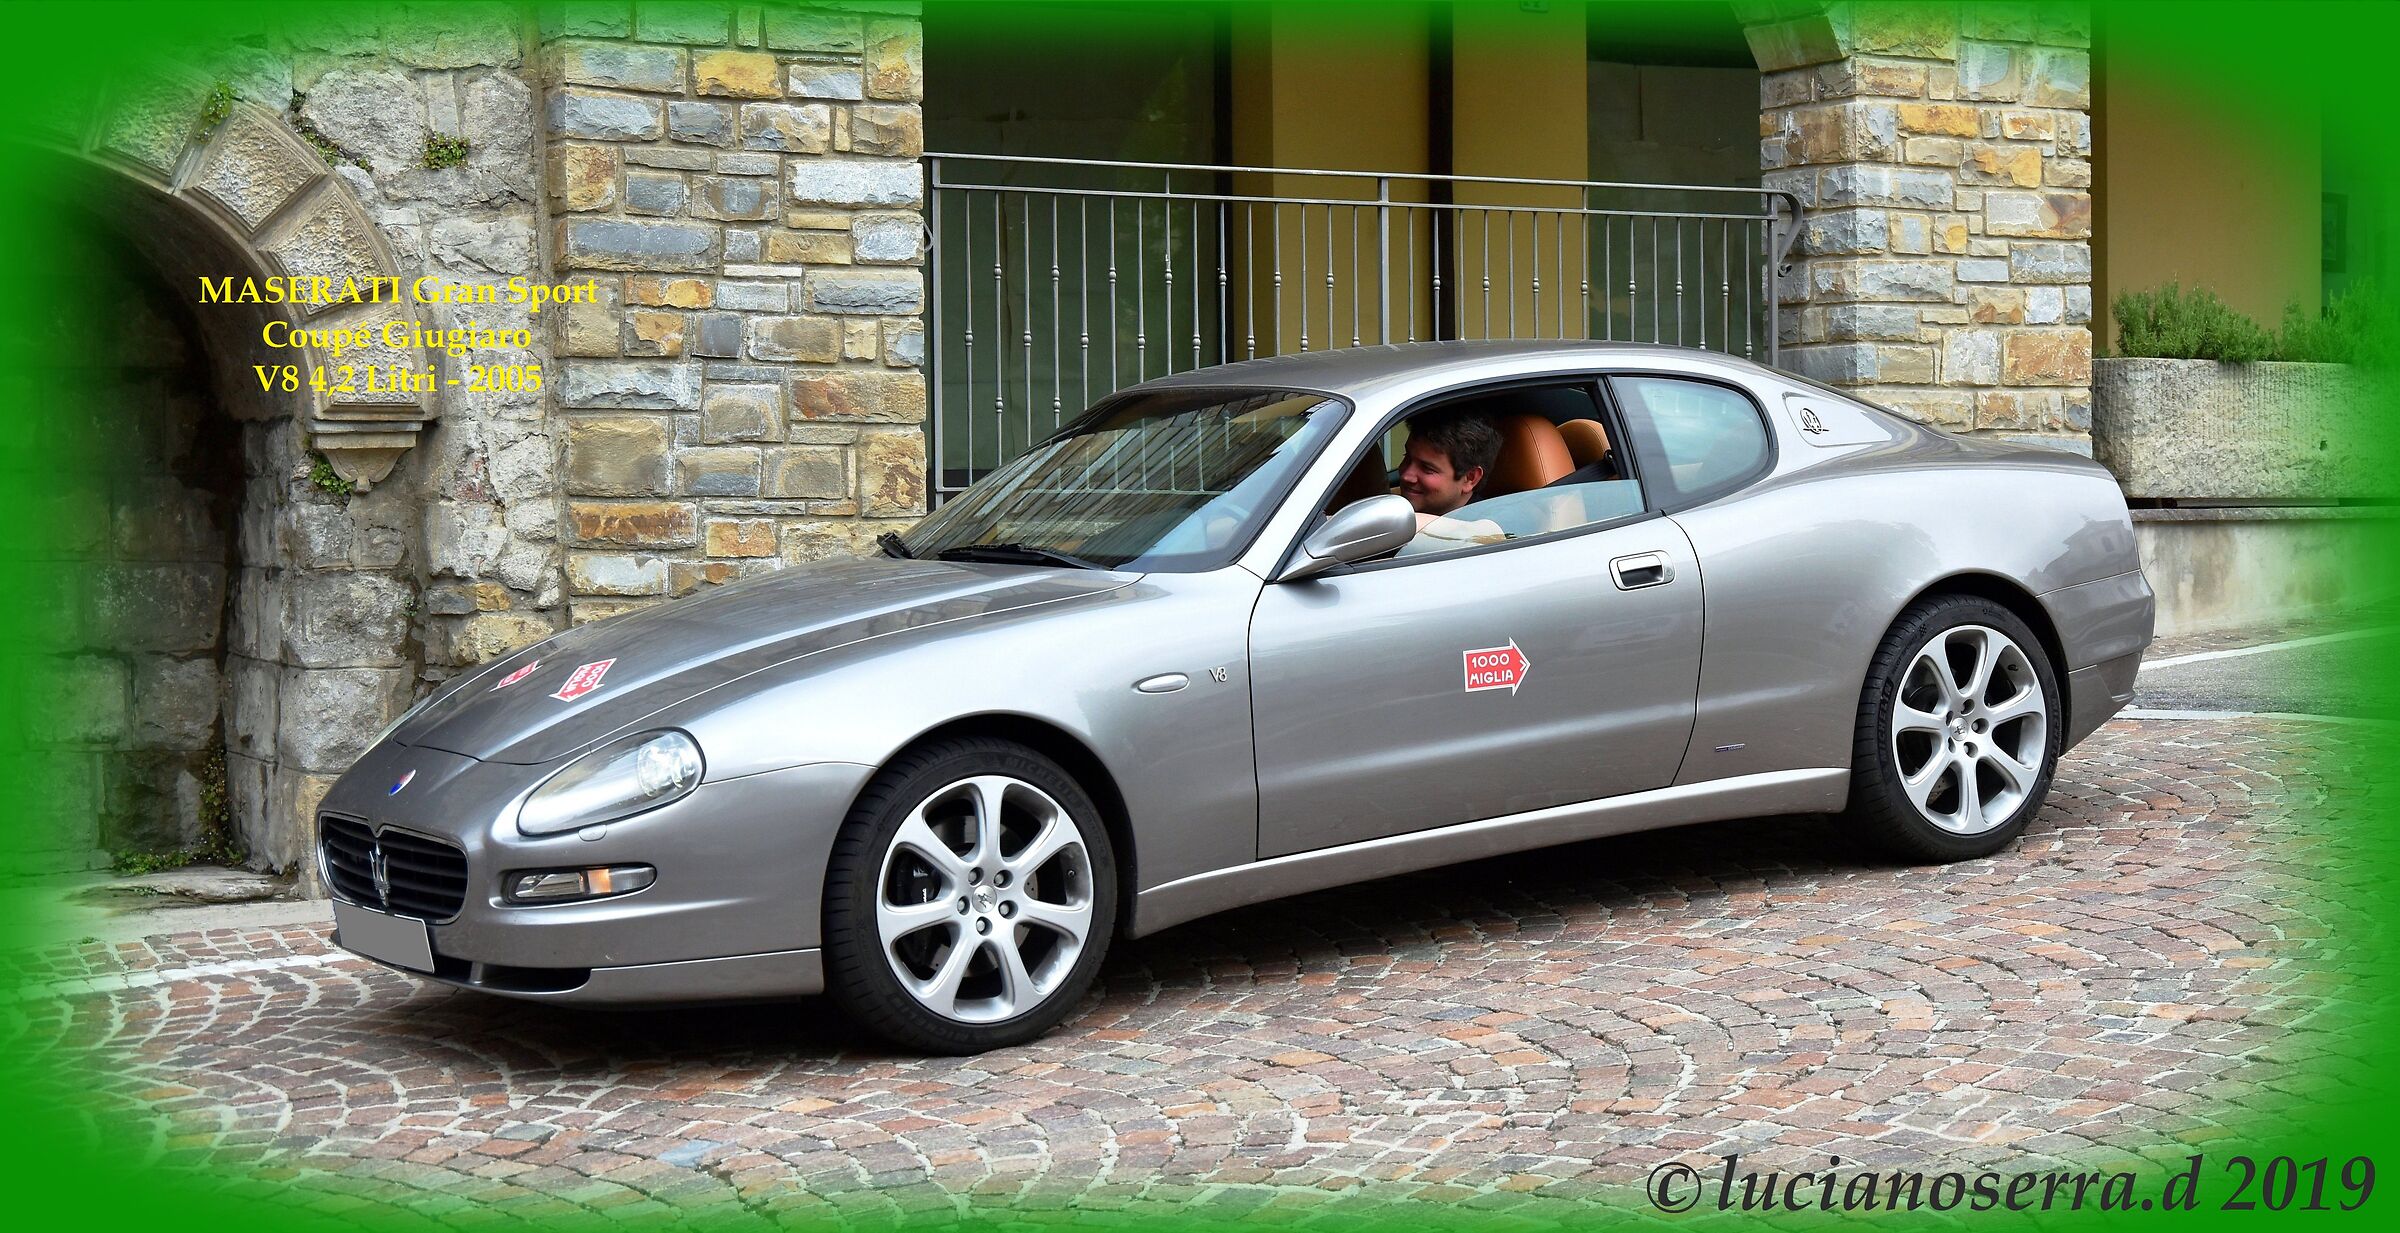 Maserati Gran Sport Coupe Giugiaro V8 4.2 Liters-2005...